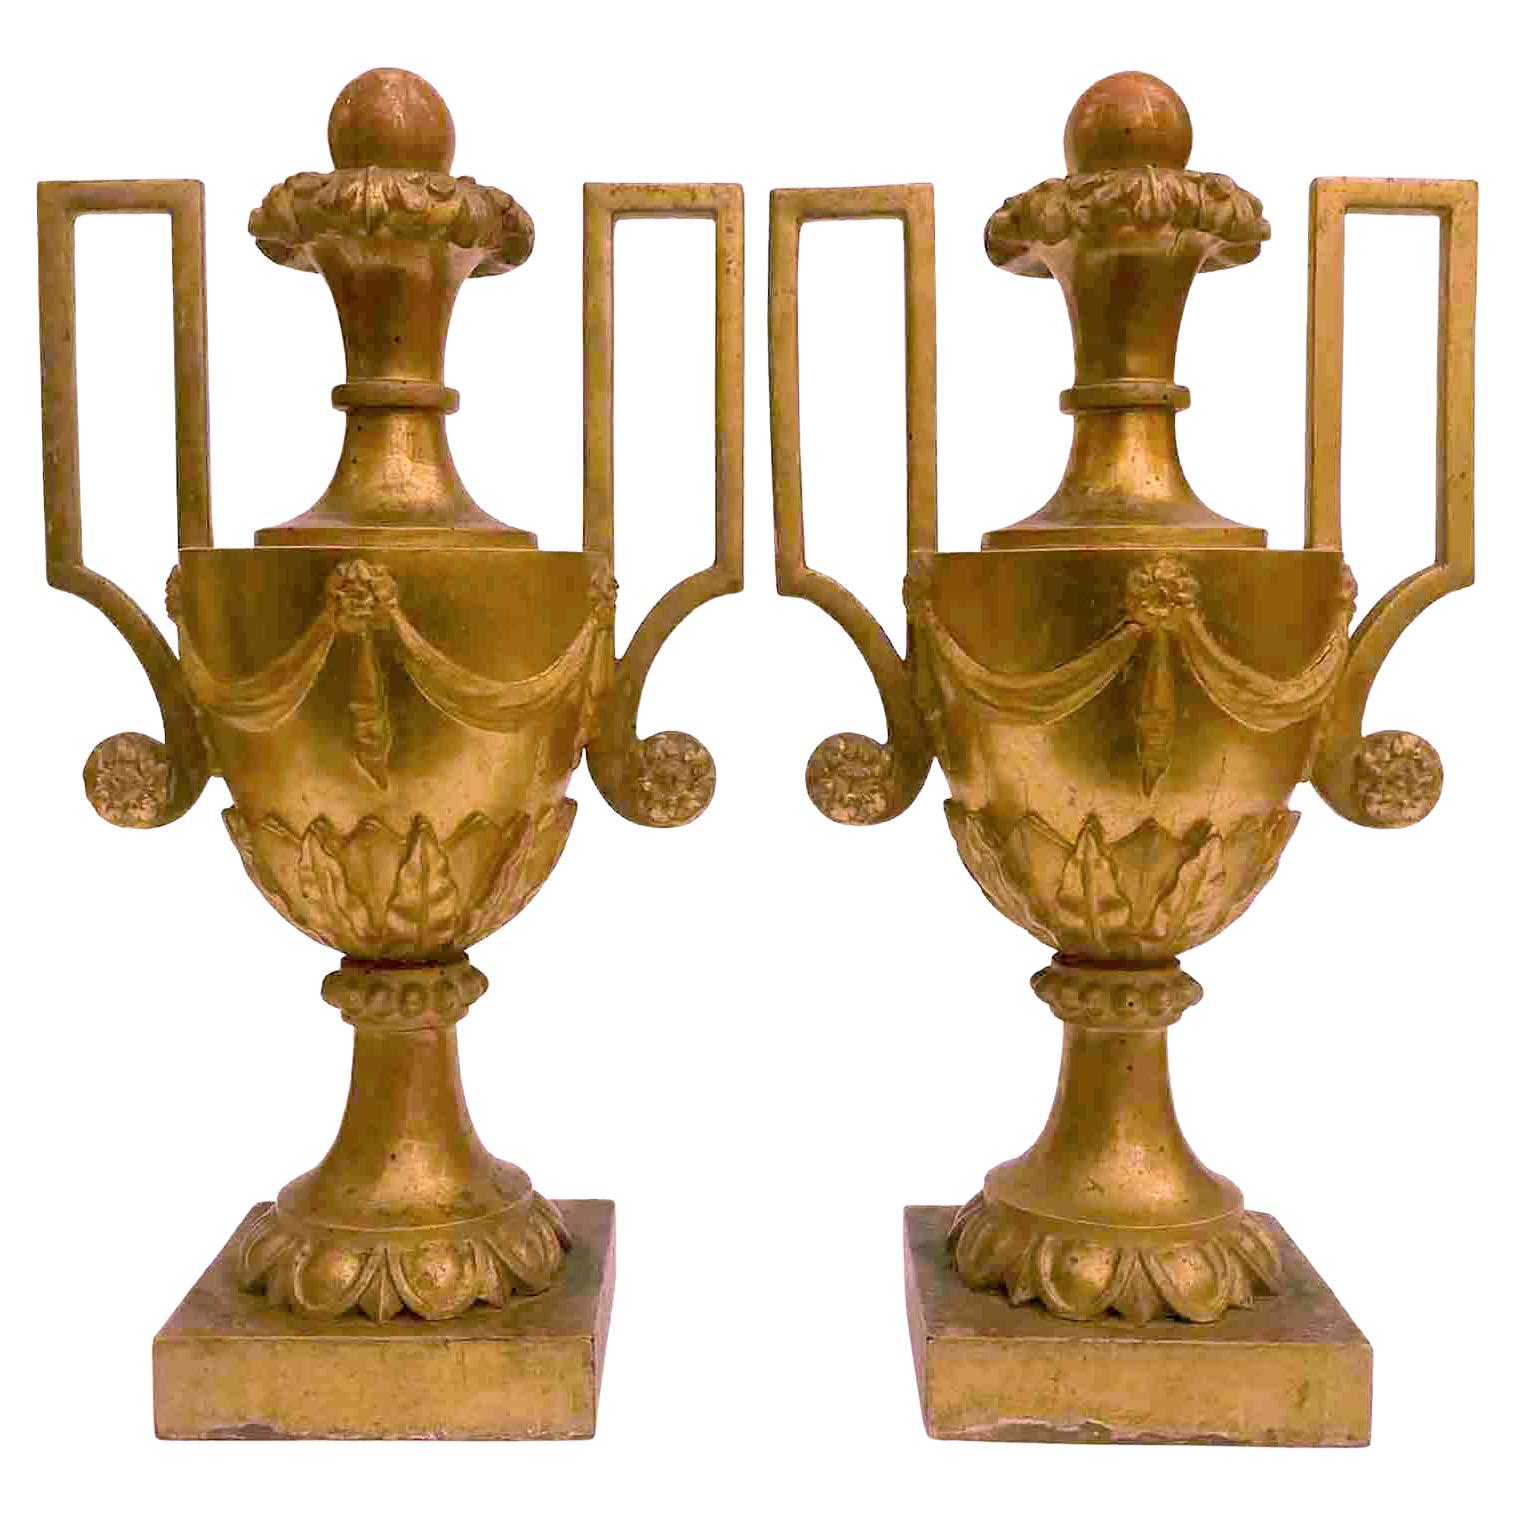 Großes Paar italienischer Vasen mit vergoldeten Henkeln, neoklassizistische Schnitzerei, 18. Jahrhundert